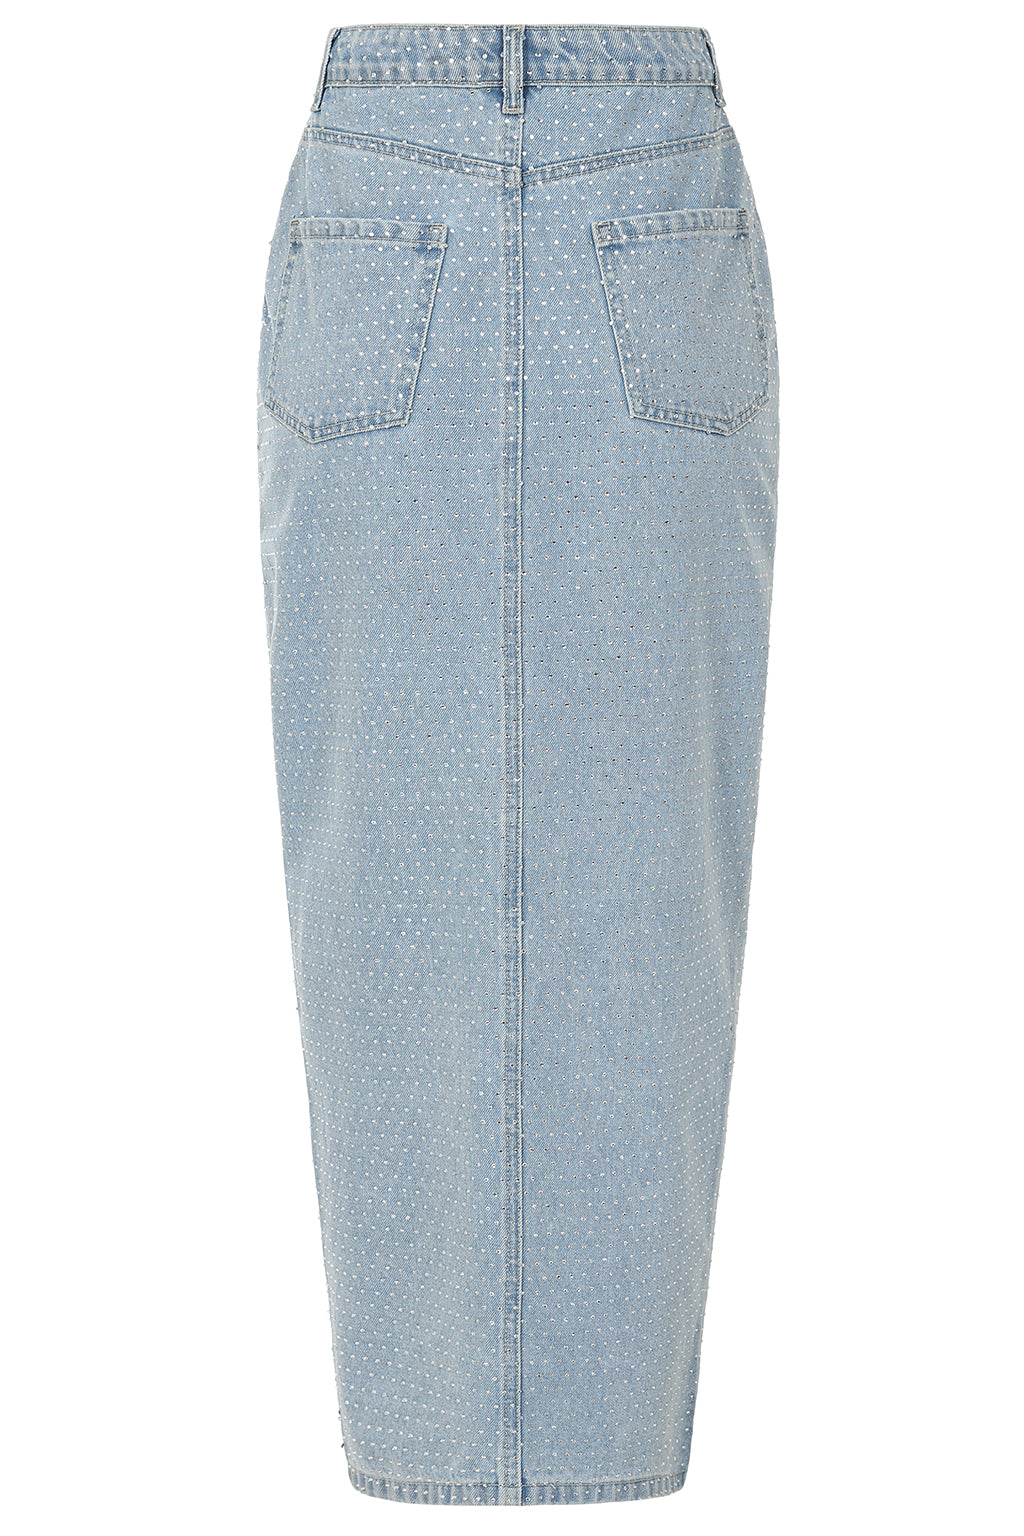 HARPER Crystal Embellished Denim Maxi Skirt in Light Blue